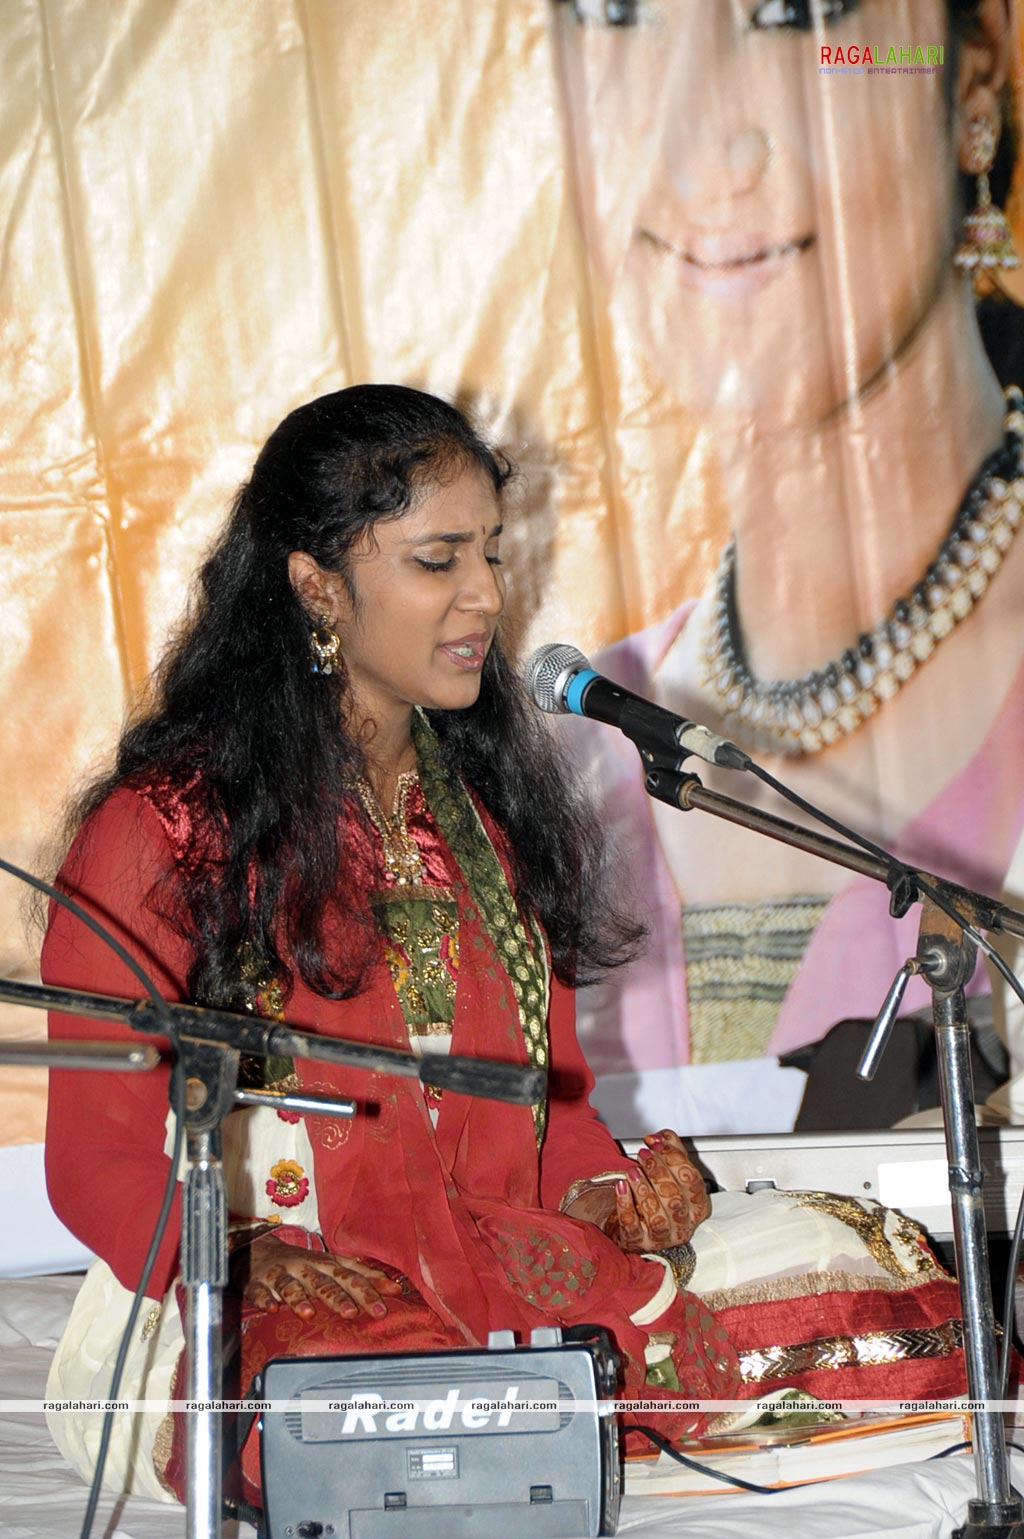 Annamaya Sakala Devatharchana Album Launch